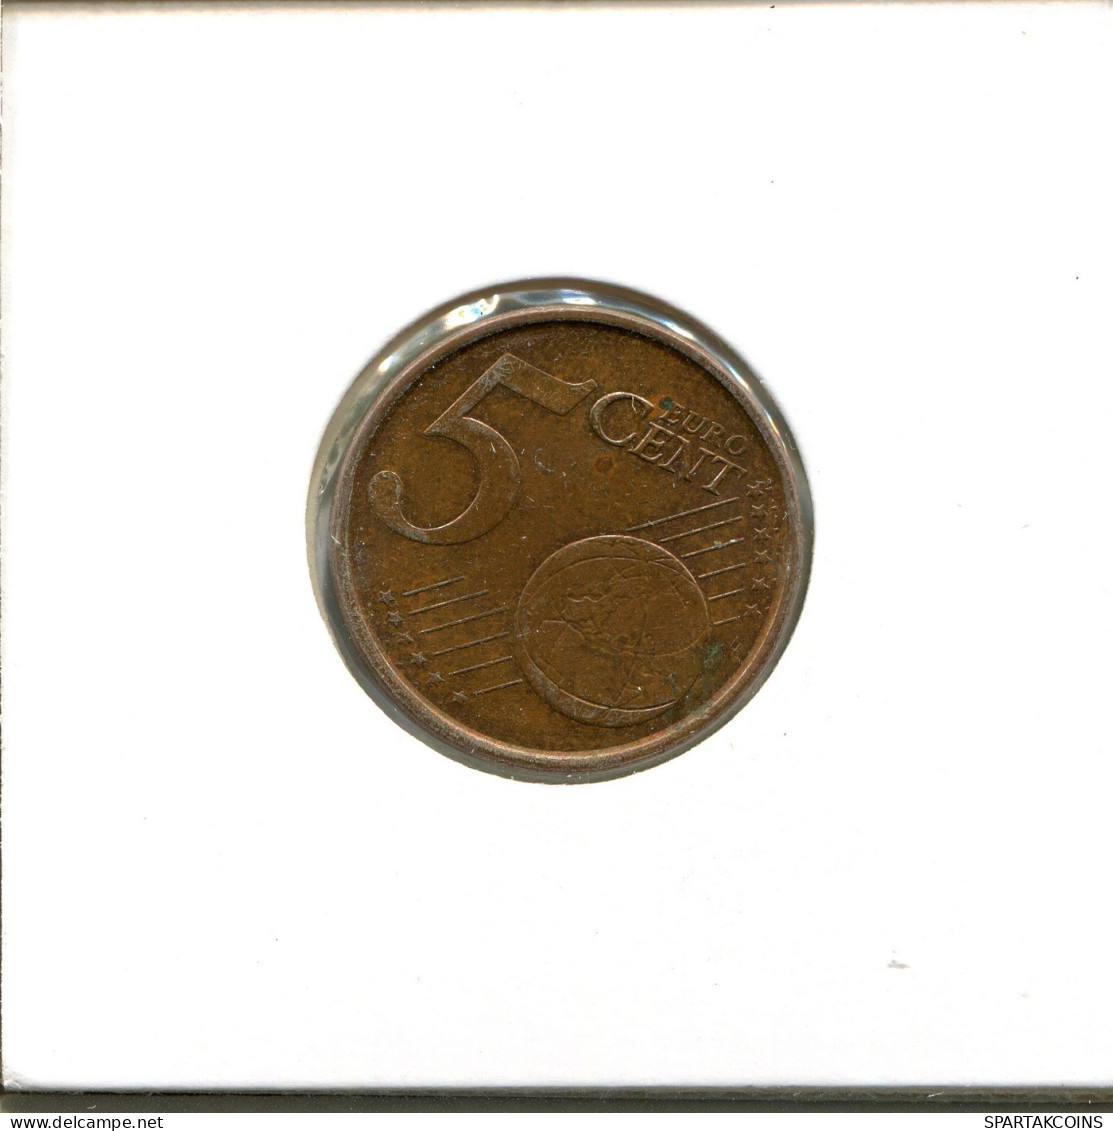 5 EURO CENTS 2004 SPAIN Coin #EU567.U.A - Spanien